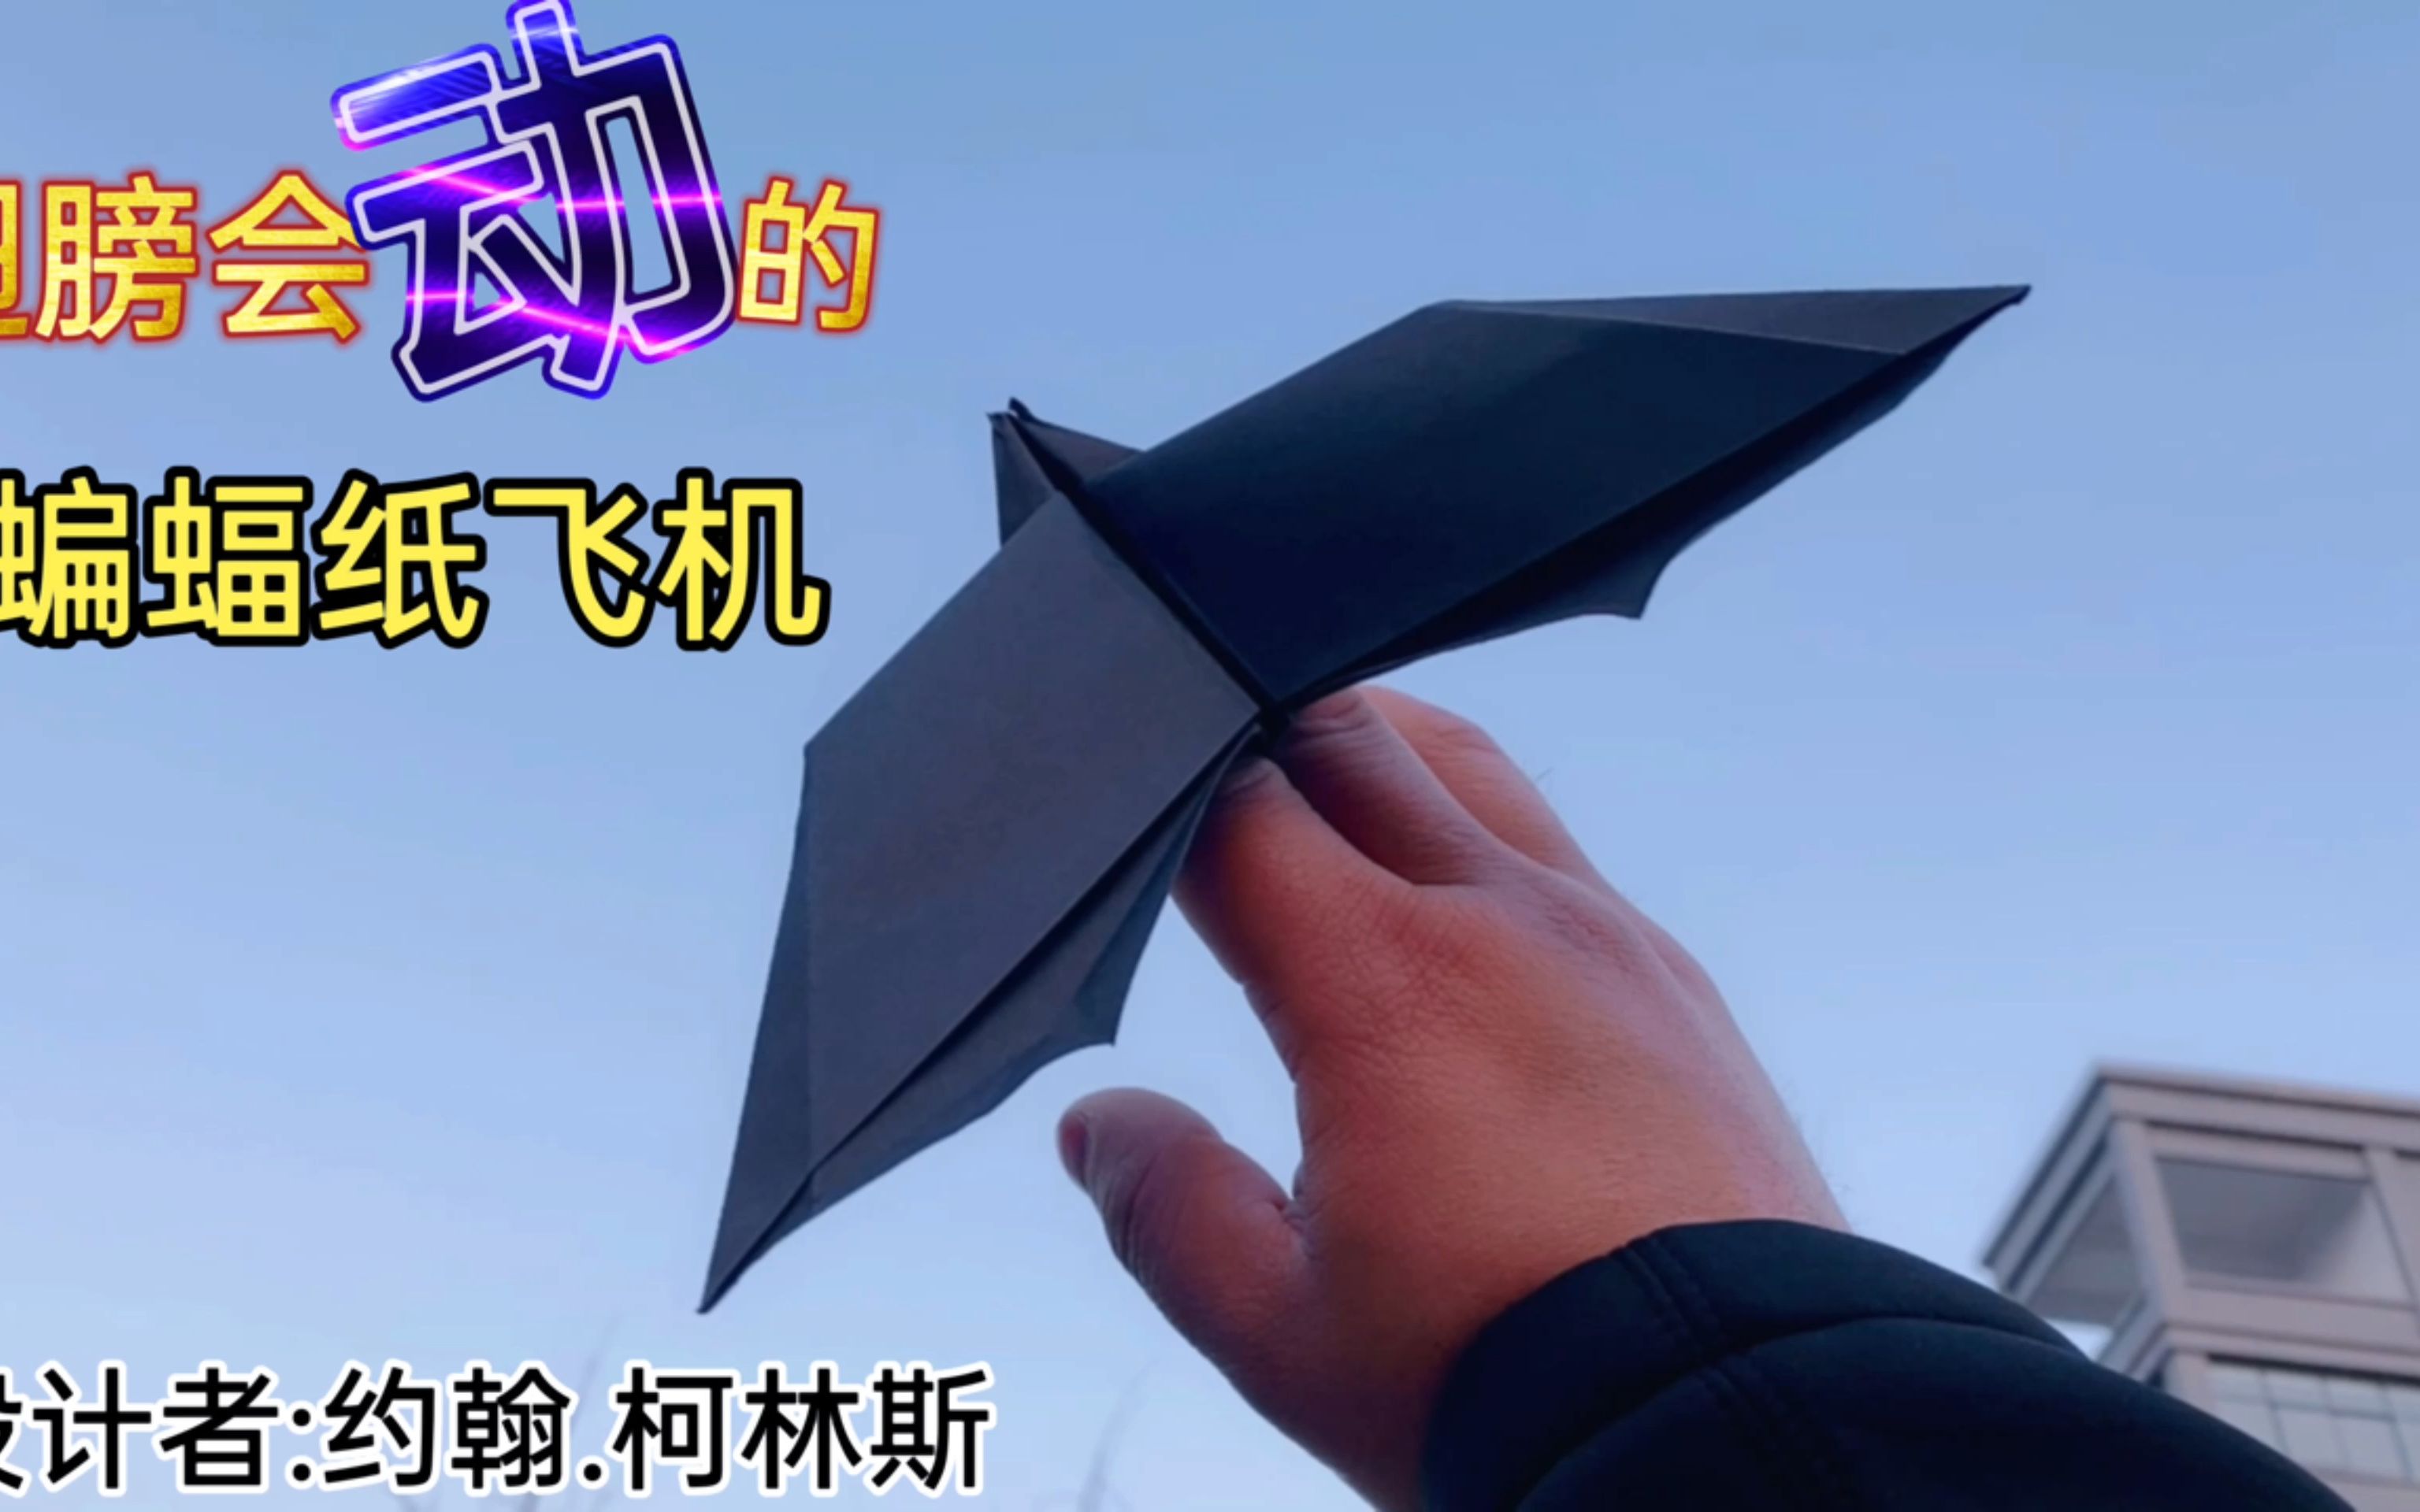 飞机怎么折 蝙蝠图片